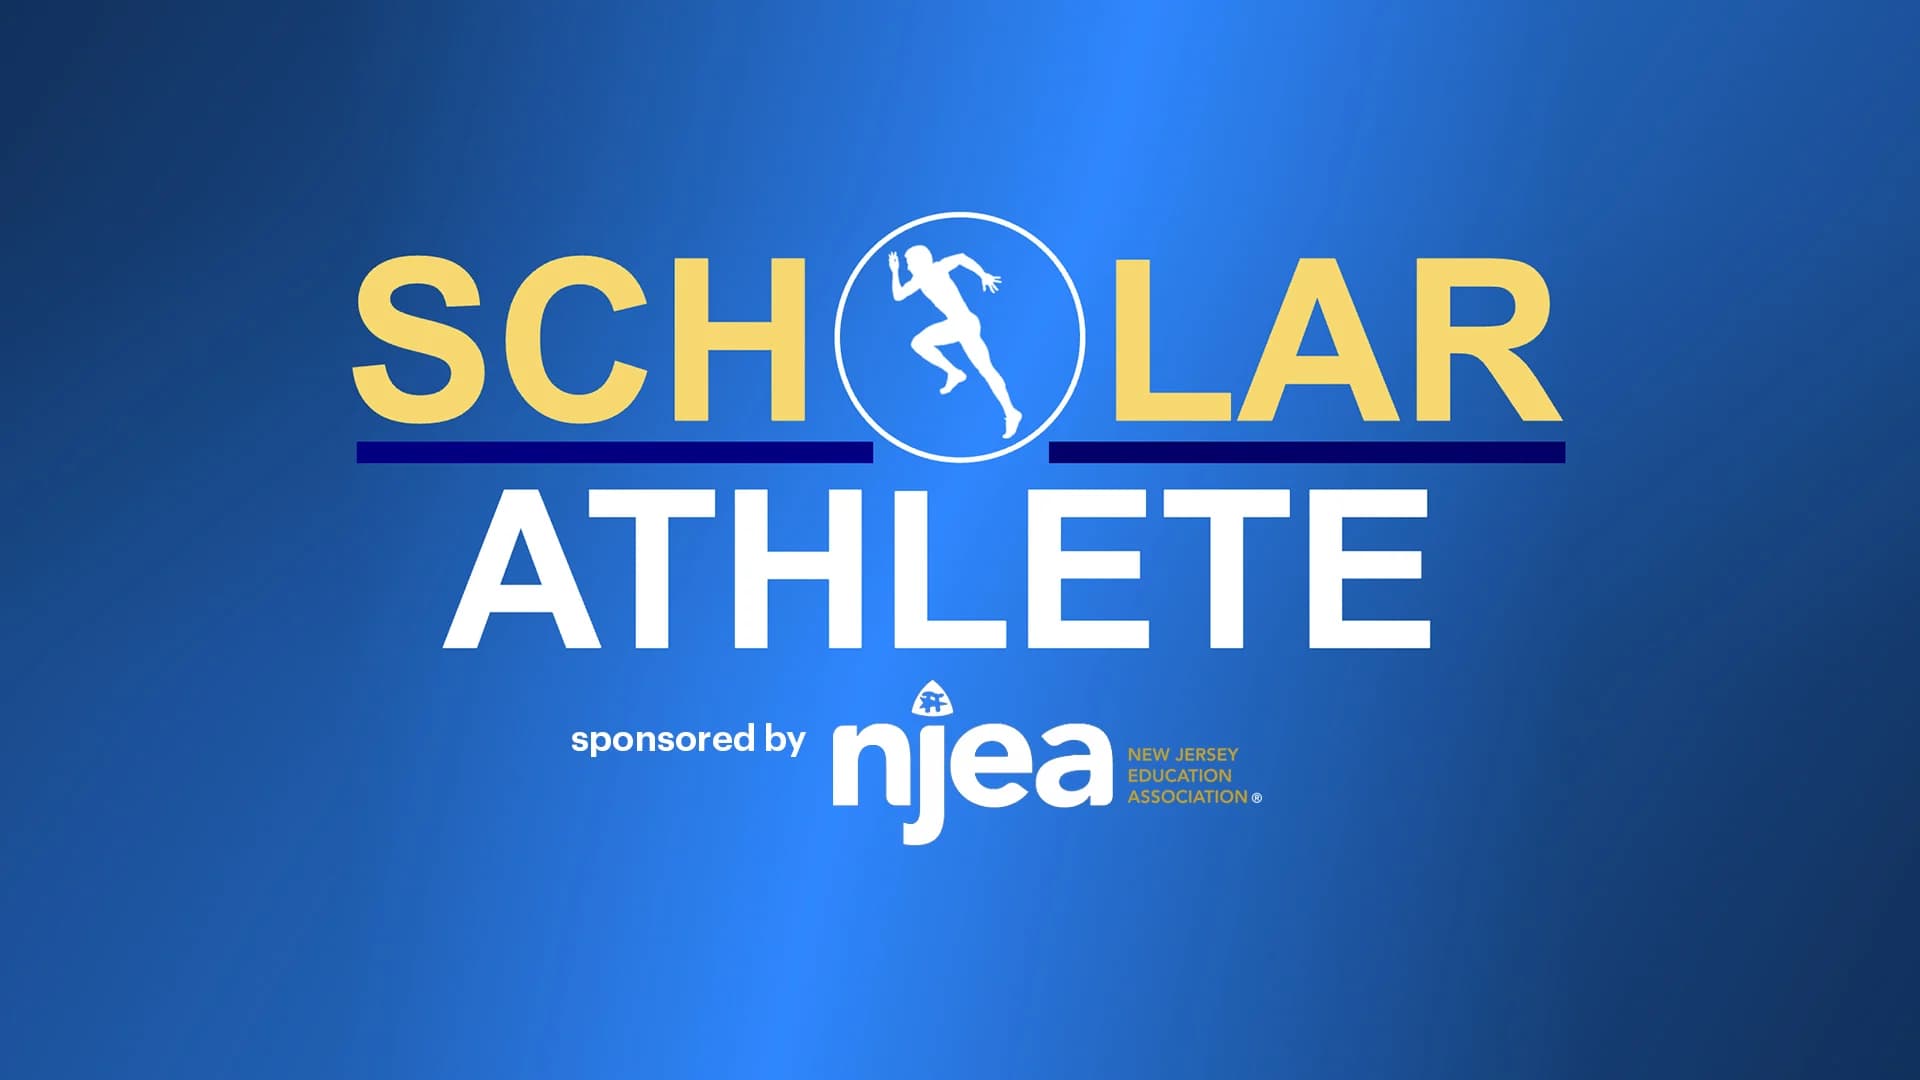  News 12 NJ & NJEA Scholar-Athlete recognition form